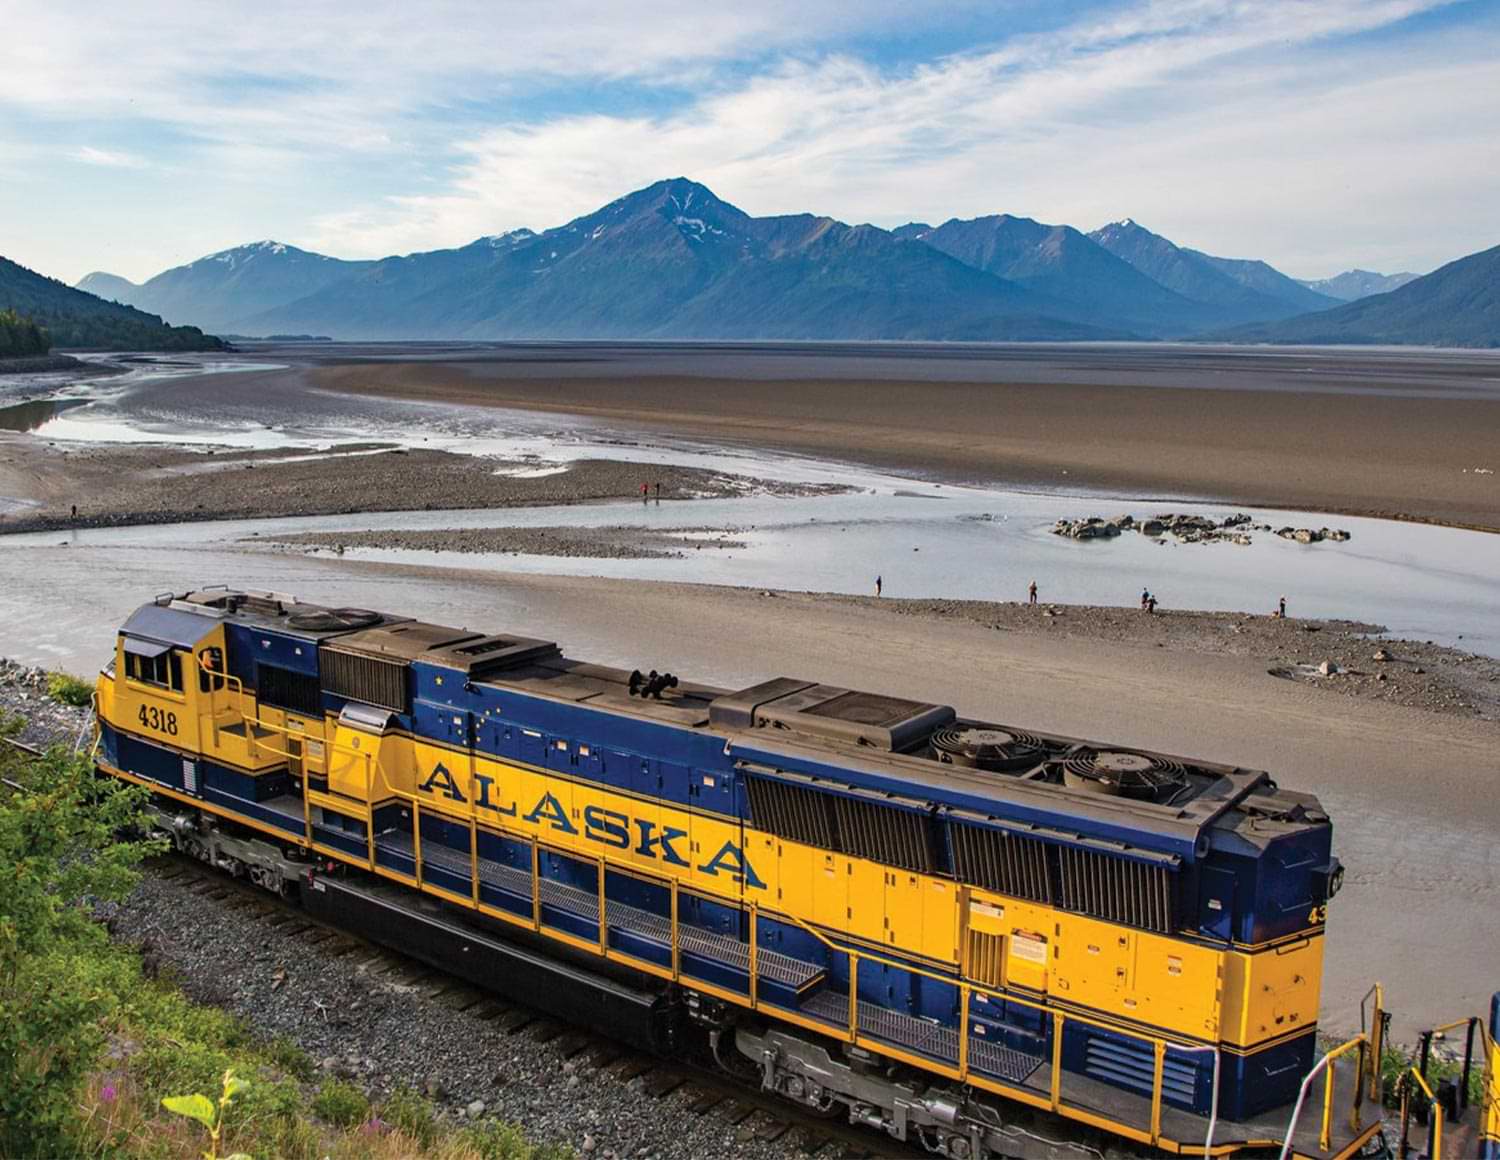 an Alaska Railroad train travels tracks by a beach like area